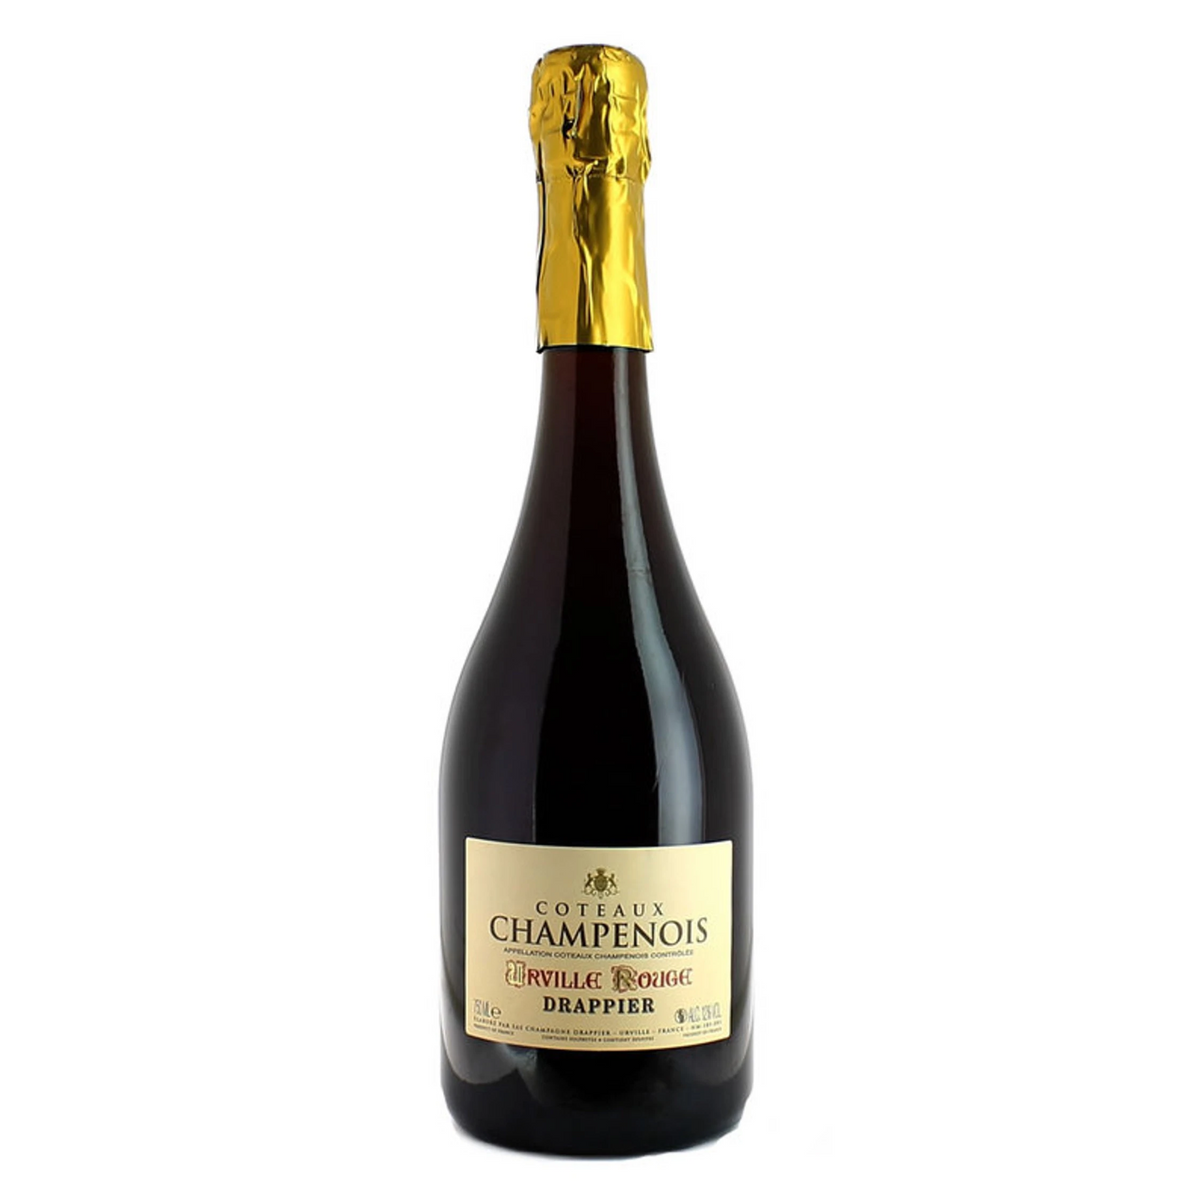 DRAPPIER Coteaux Champenois &quot;Urville Rouge&quot; NV (Still Wine)